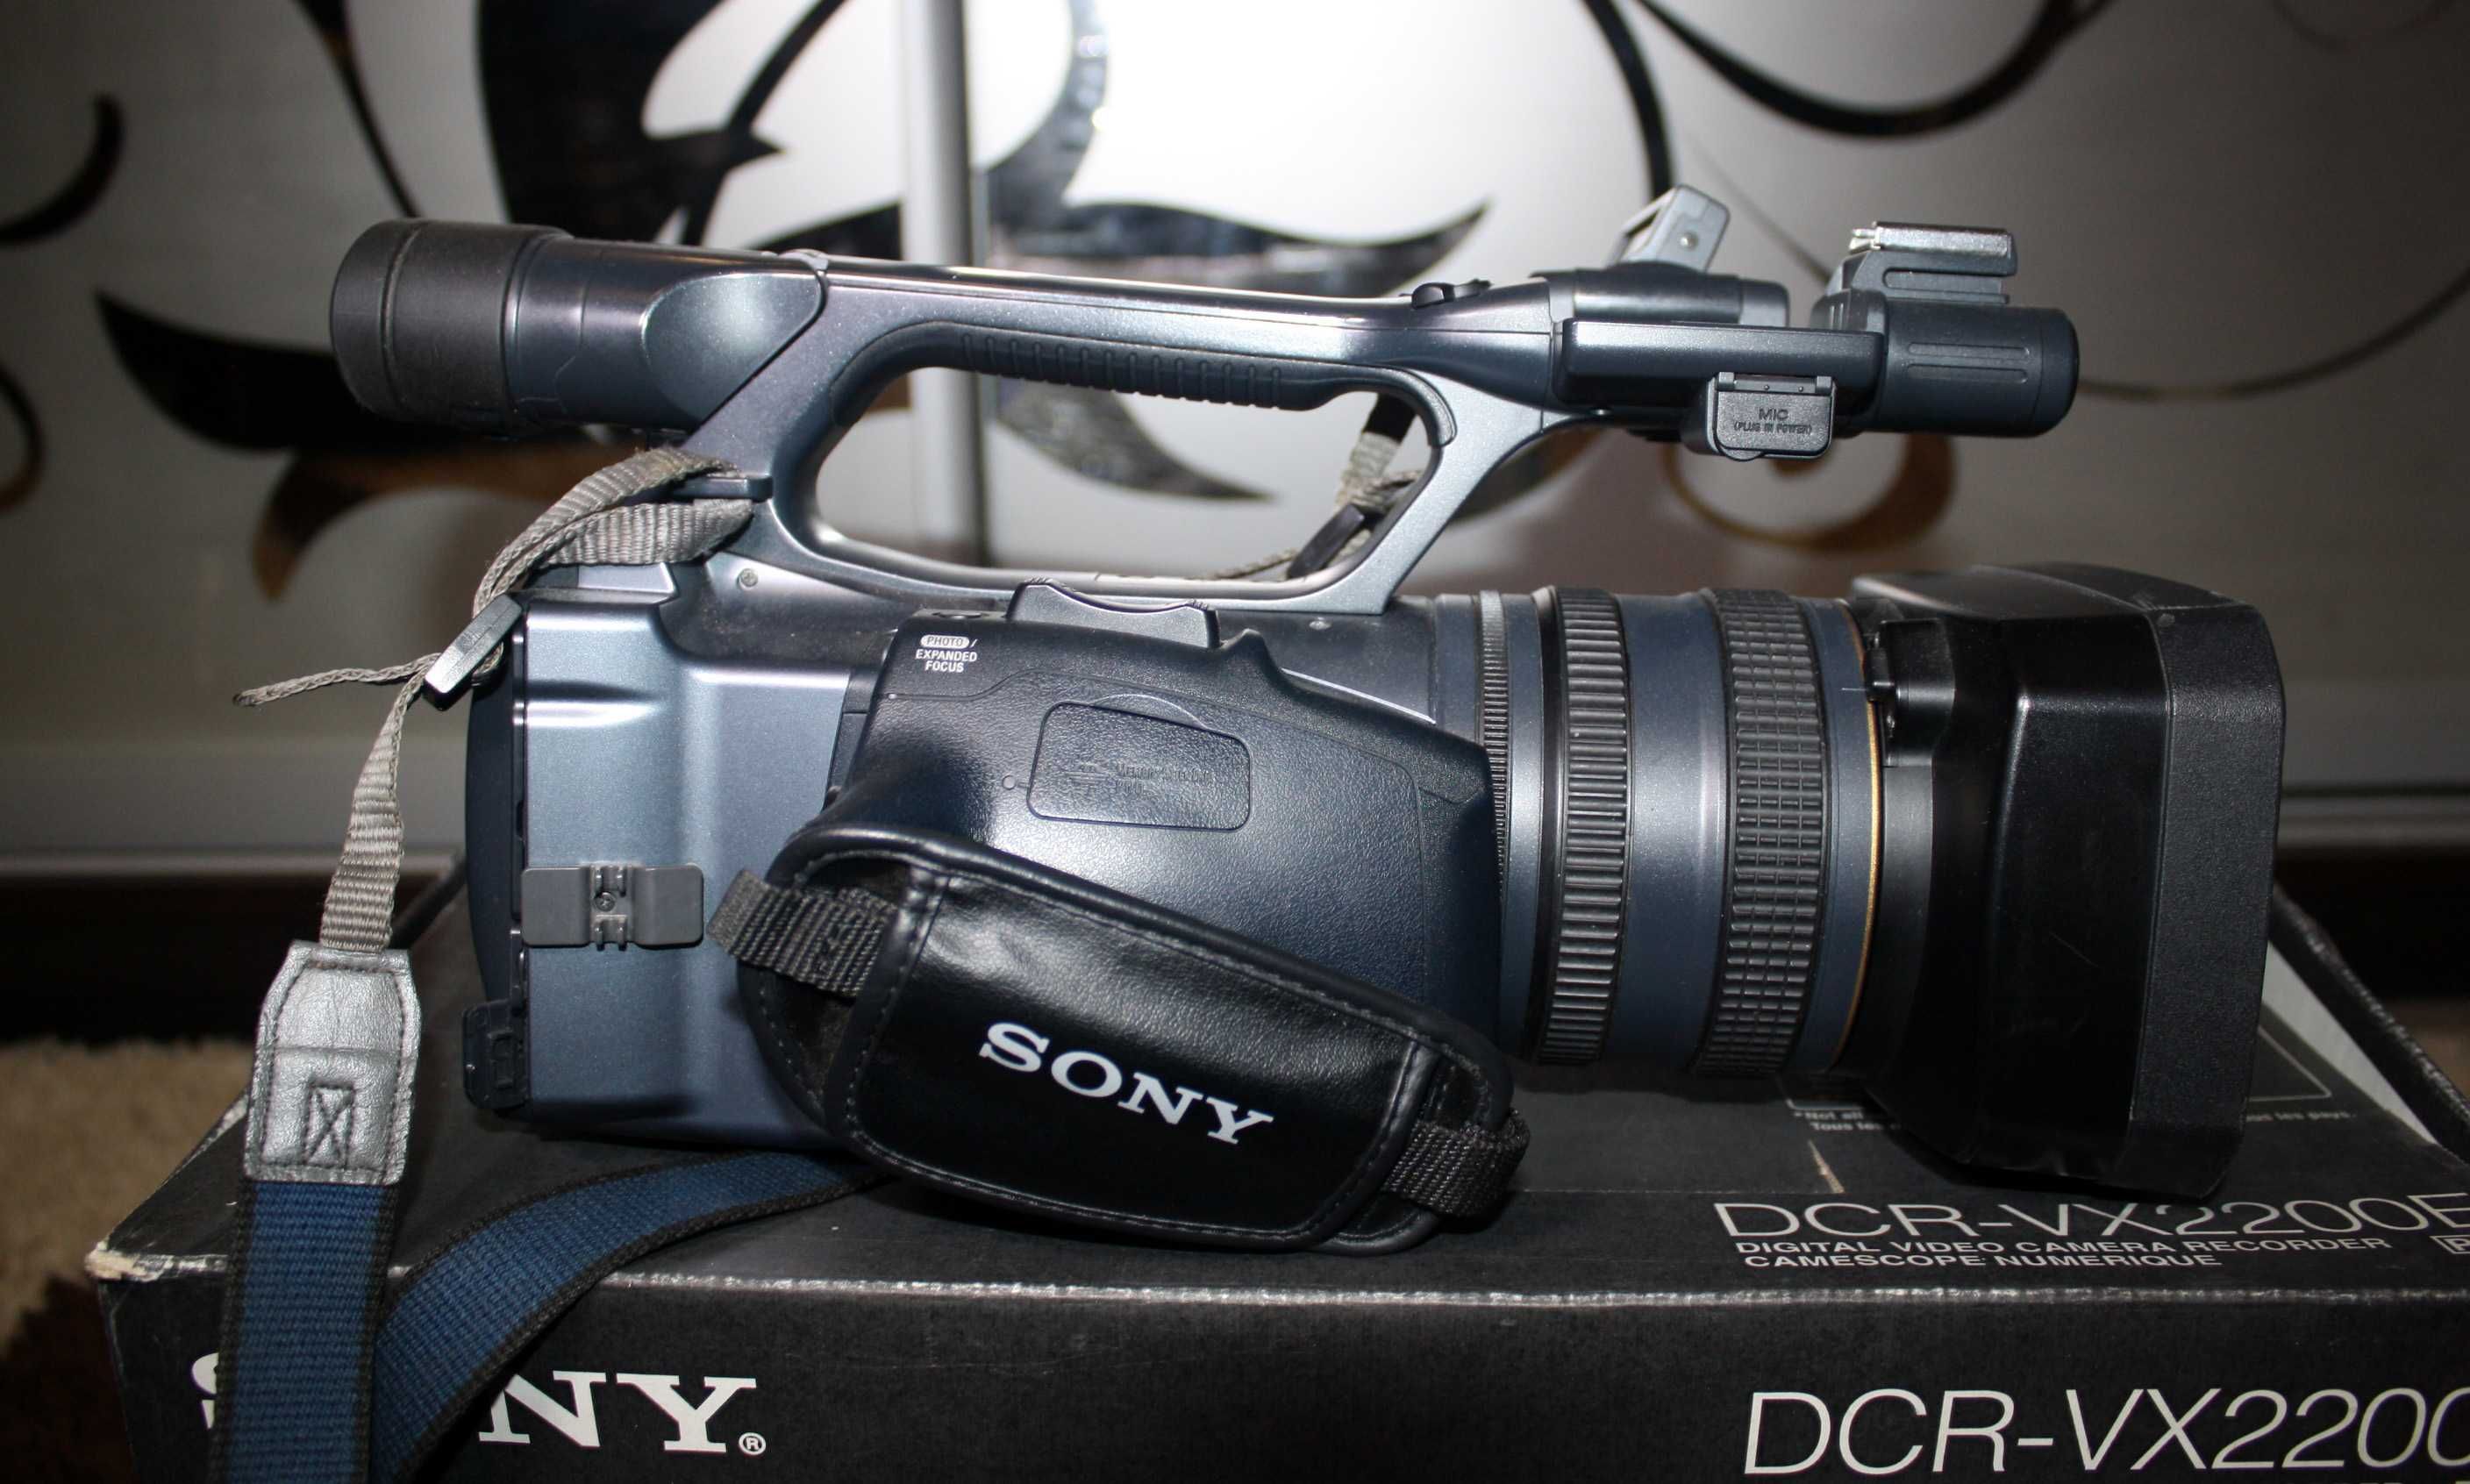 Відеокамера професійна, легендарна Sony DCR-VX 2200E - Оригінал.